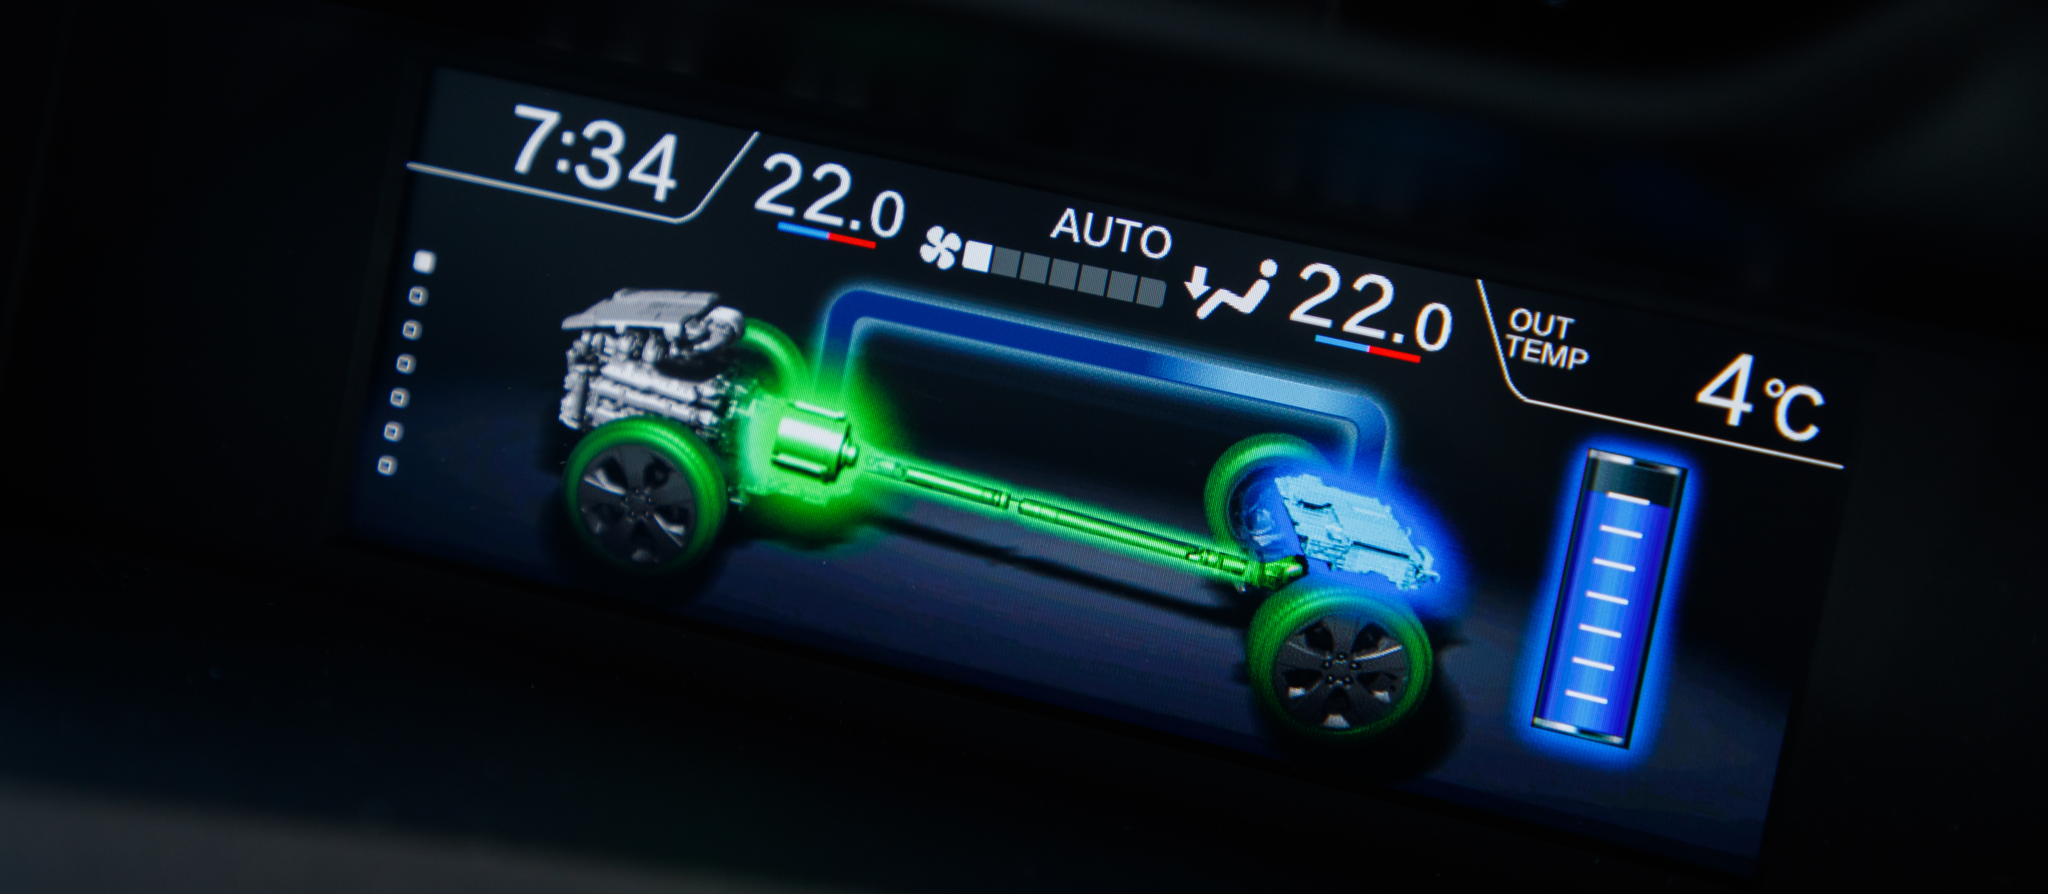 Subaru ECOhybrid modos conduccion - Subaru ya tiene híbridos y llegarán en otoño